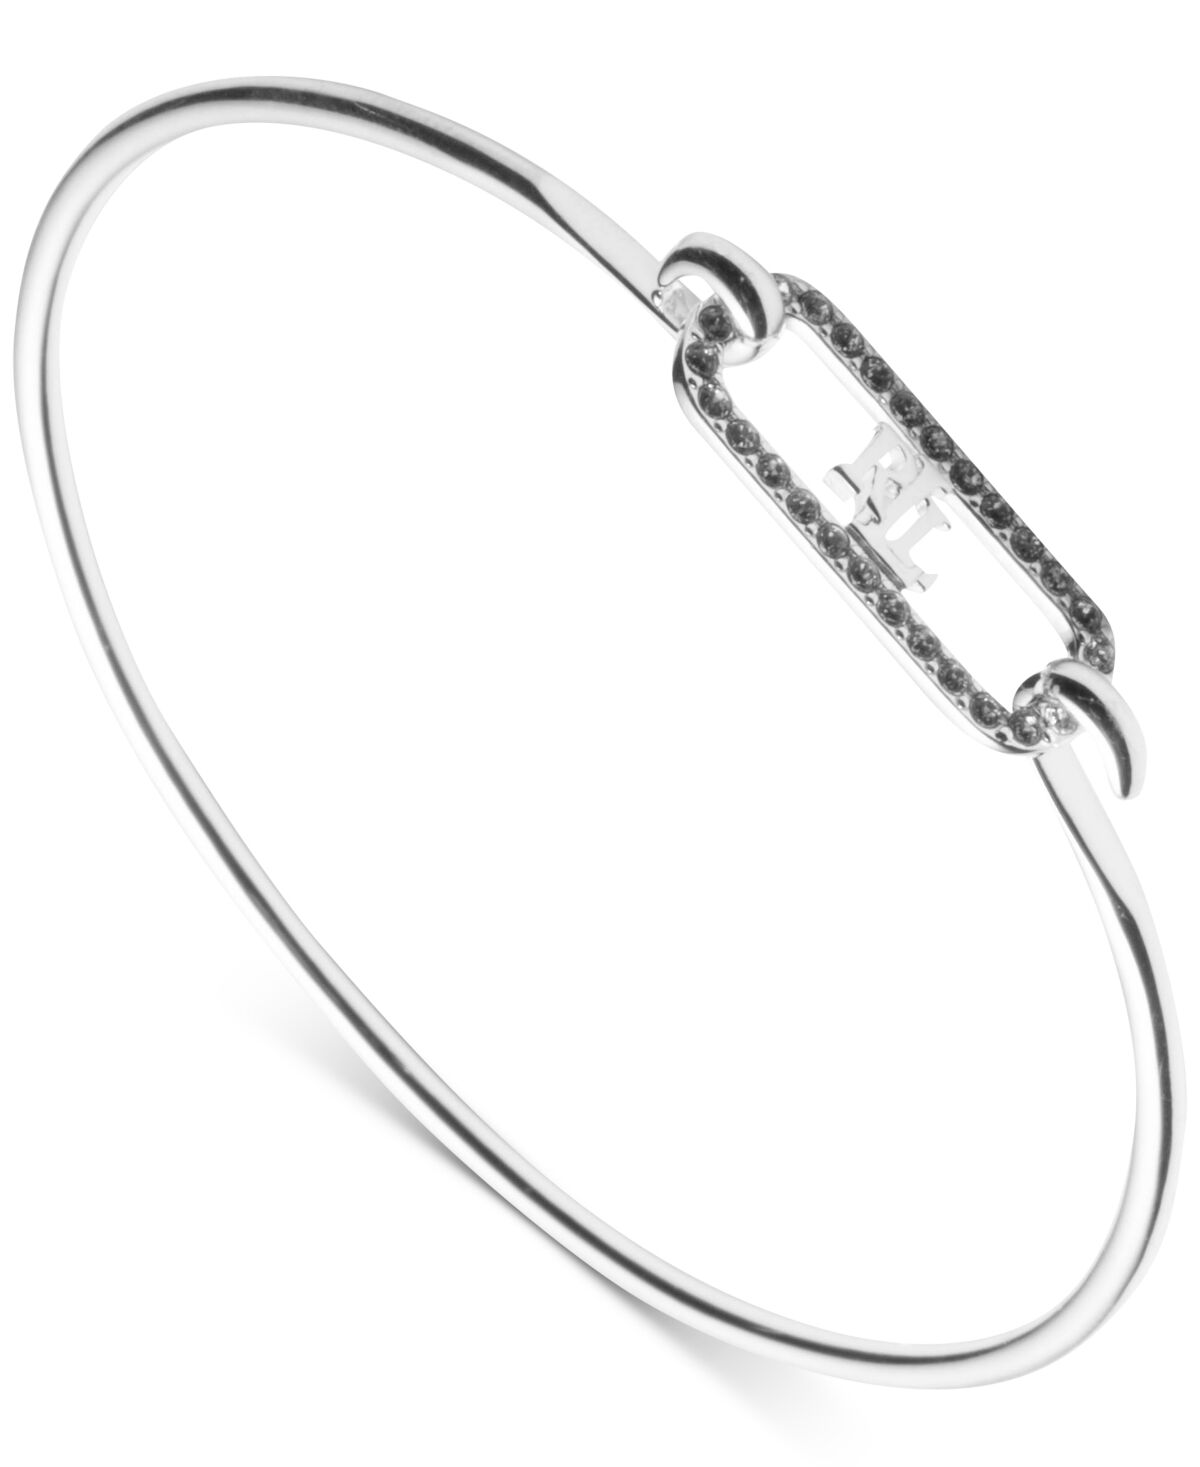 Ralph Lauren Lauren Ralph Lauren Crystal Pave Logo Link Bangle Bracelet in Sterling Silver - Sterling Silver